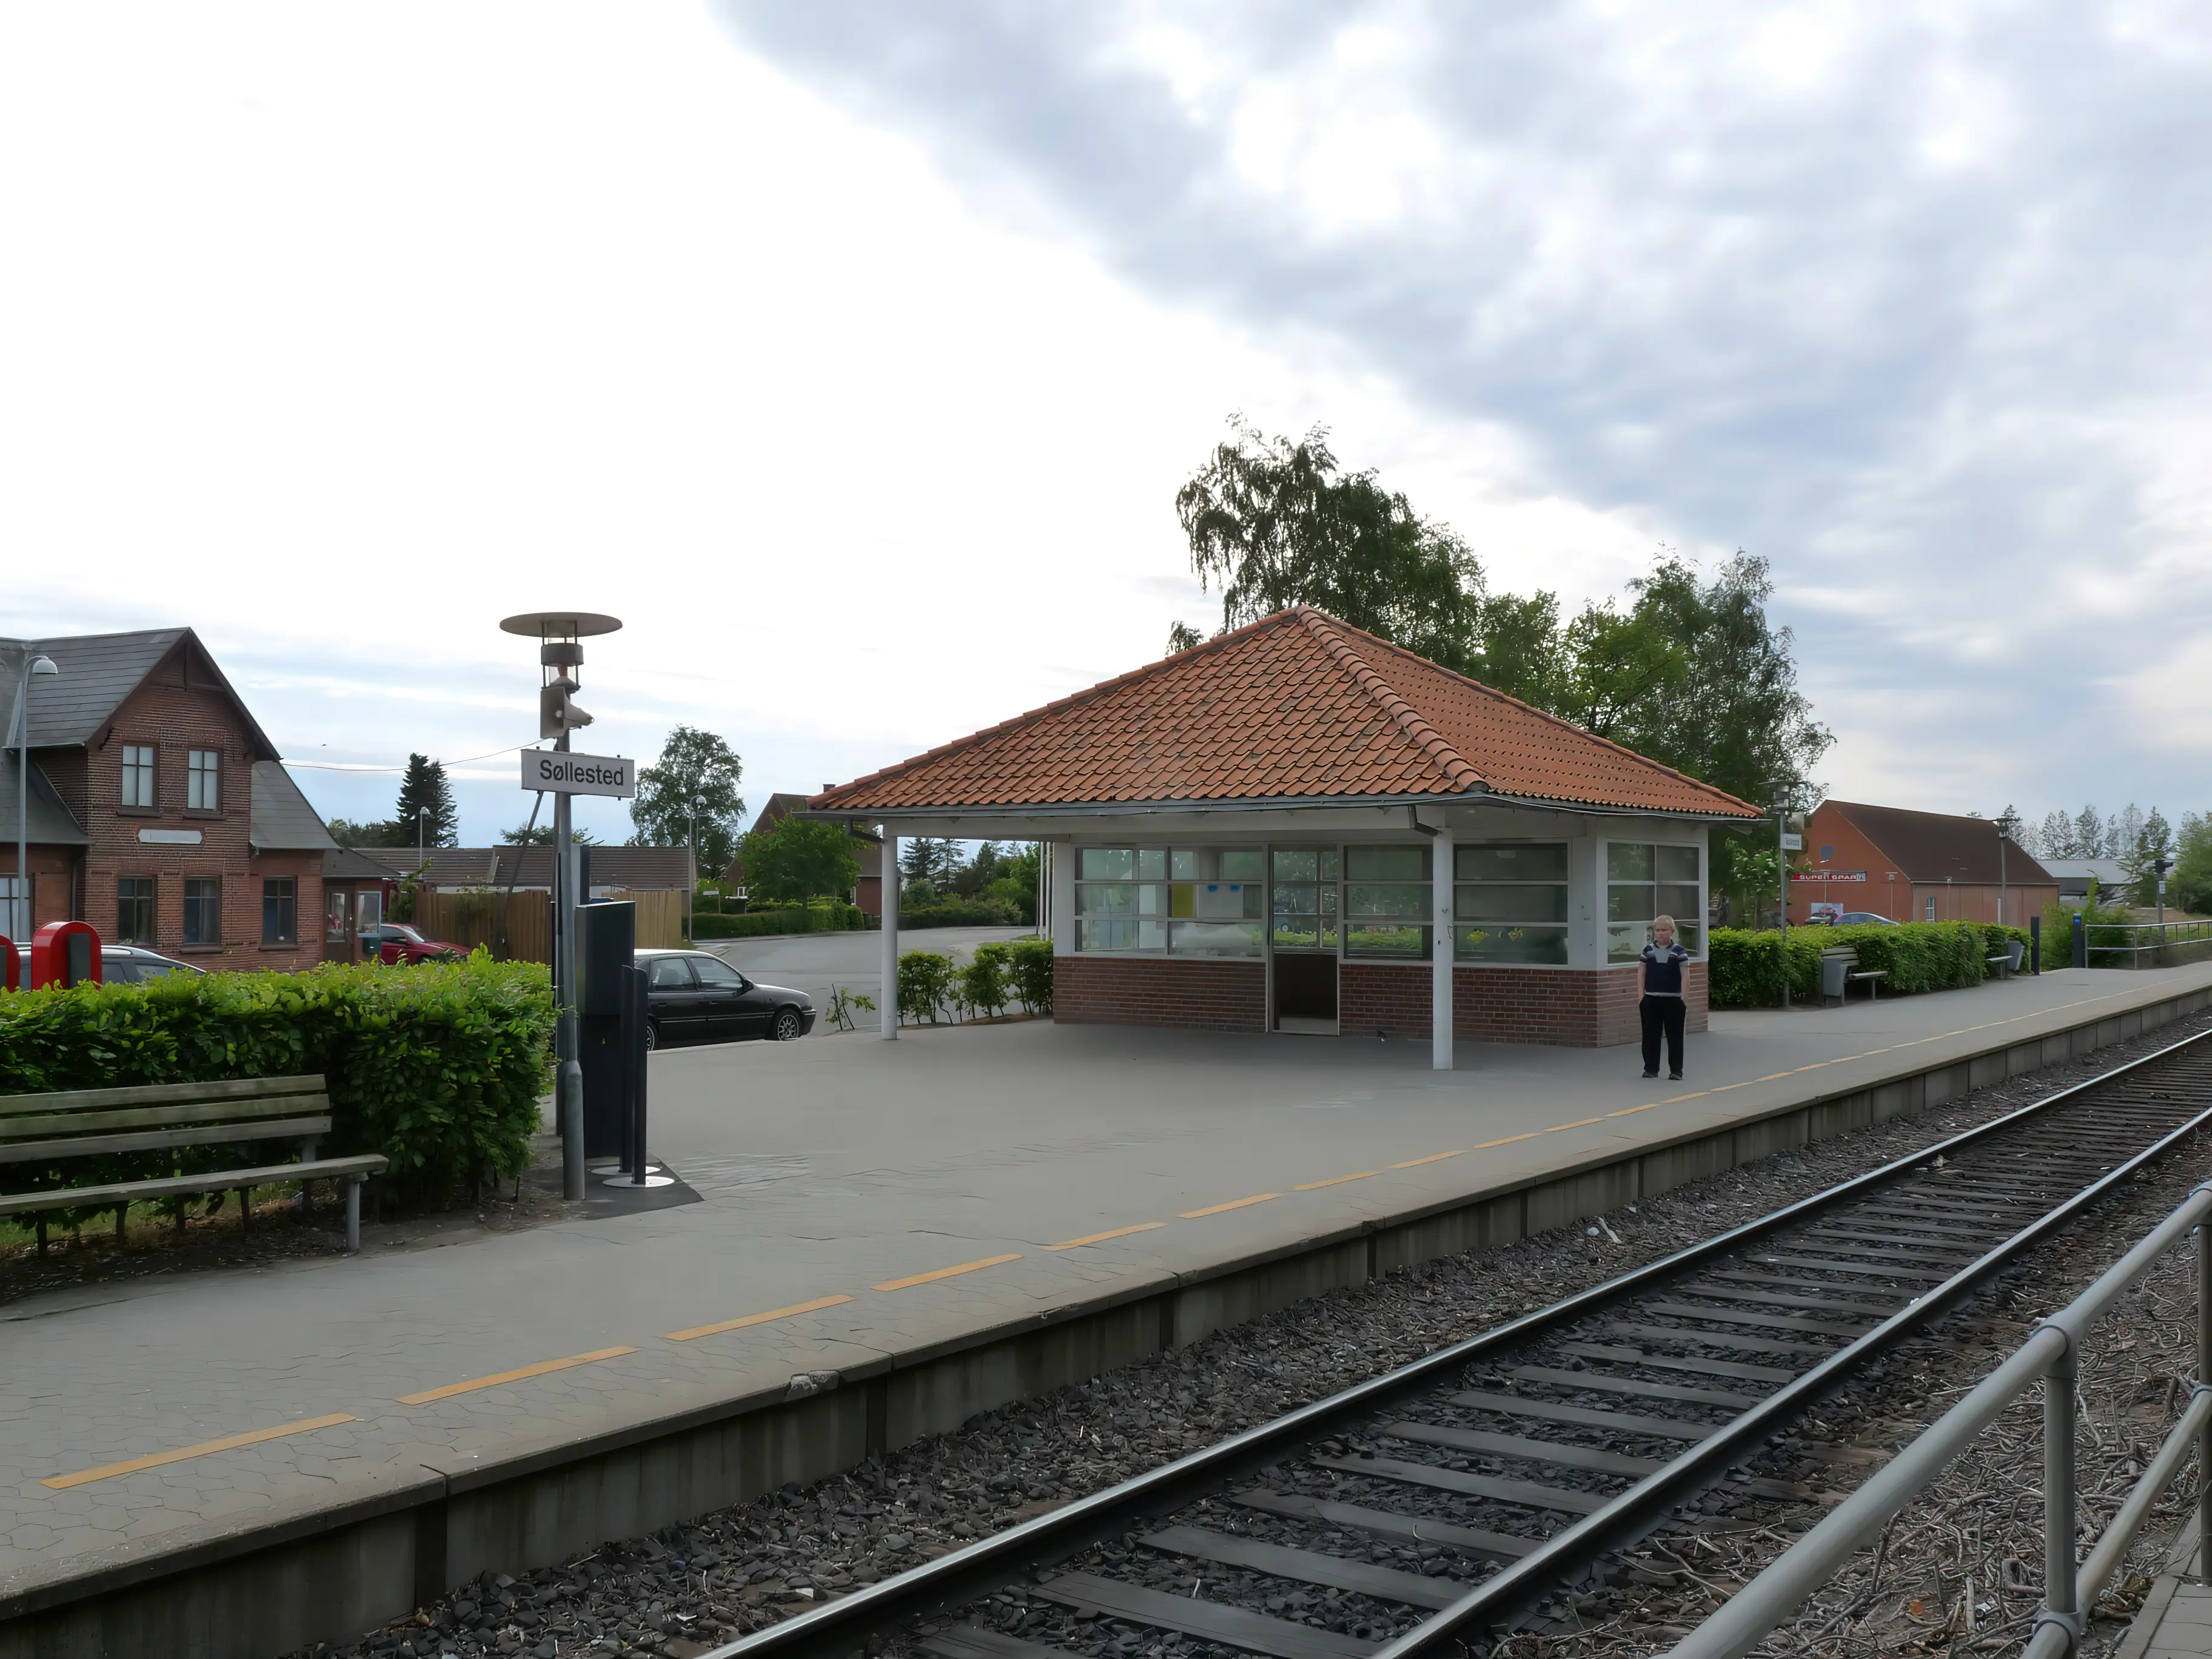 Billede af Søllested Station - Station er nedrevet, men Søllested Station har ligget her.